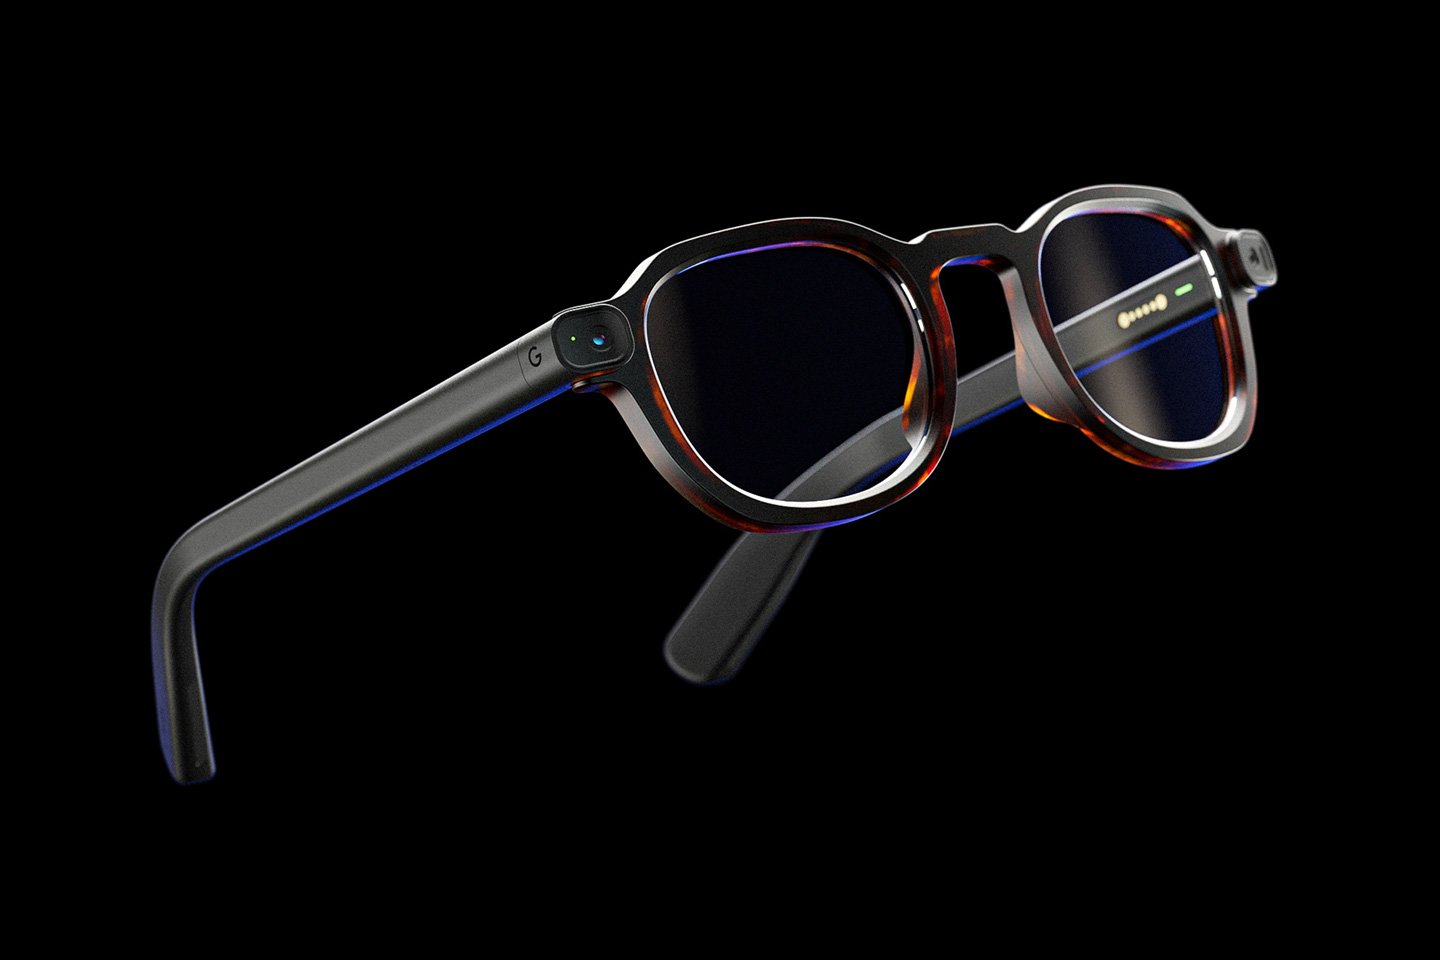 Ta koncepcja Google Glass 2022 rekompensuje wszystkie błędy popełnione przez Google przy oryginalnych okularach AR